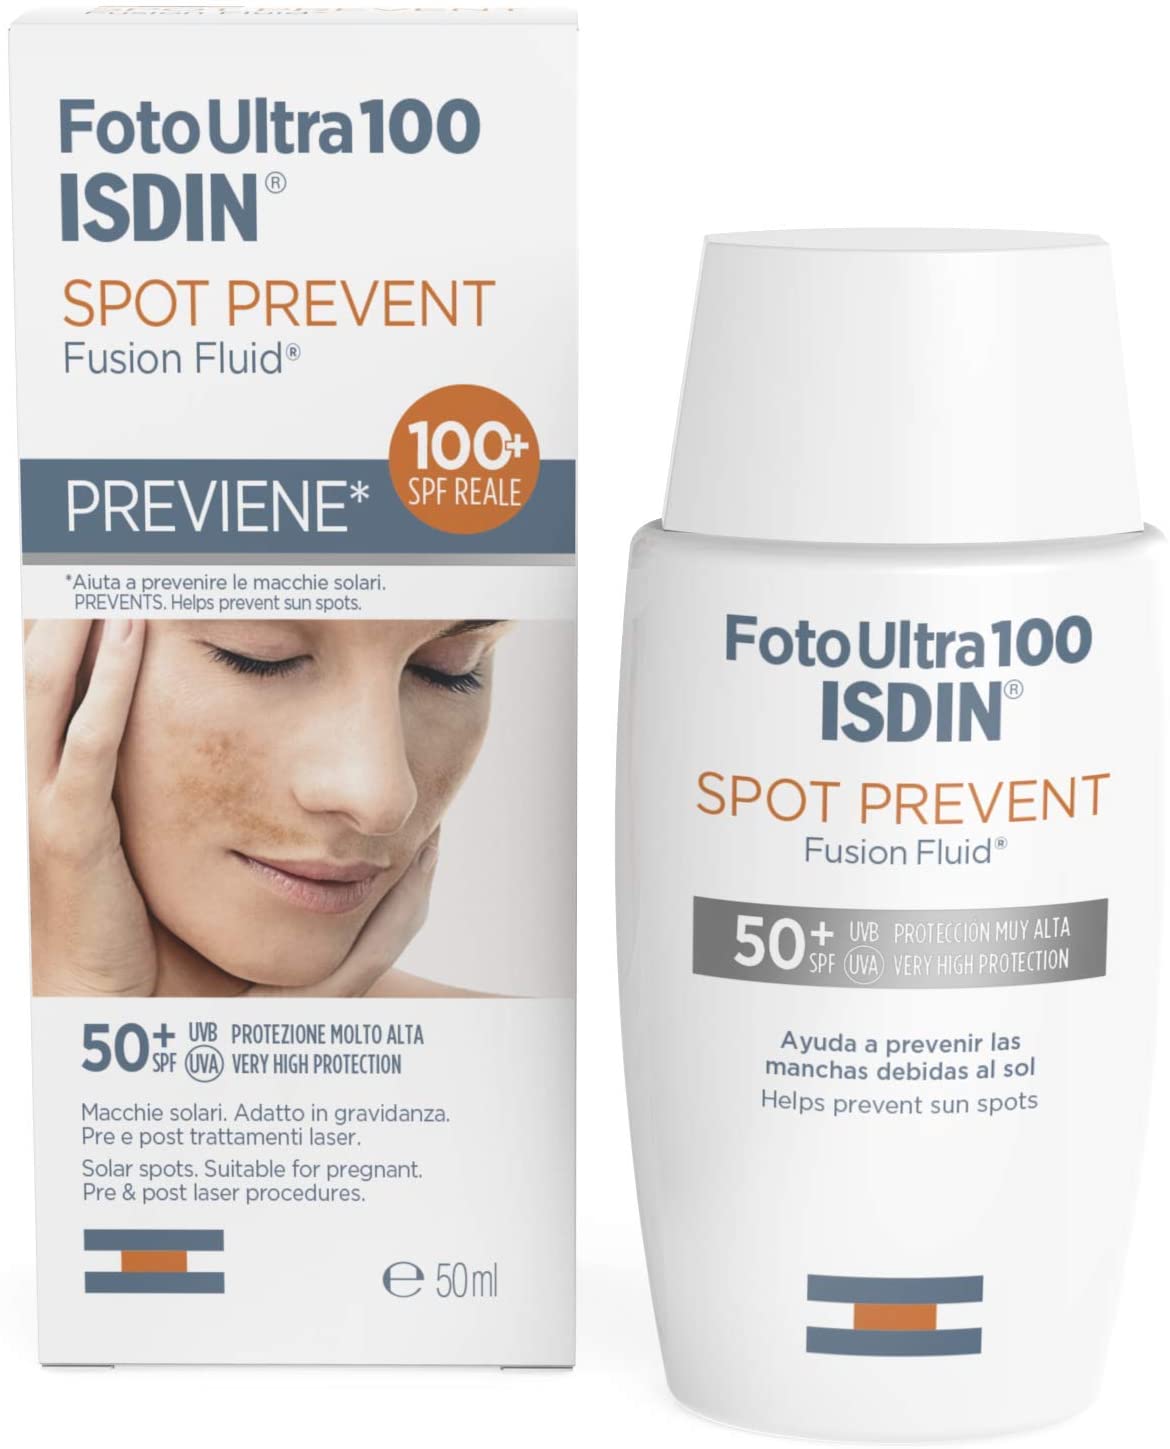 FotoUlta100 ISDIN Spot Prevent SPF50+ Fusion Fluid Protezione molto Alta | Previene le macchie | 50ml